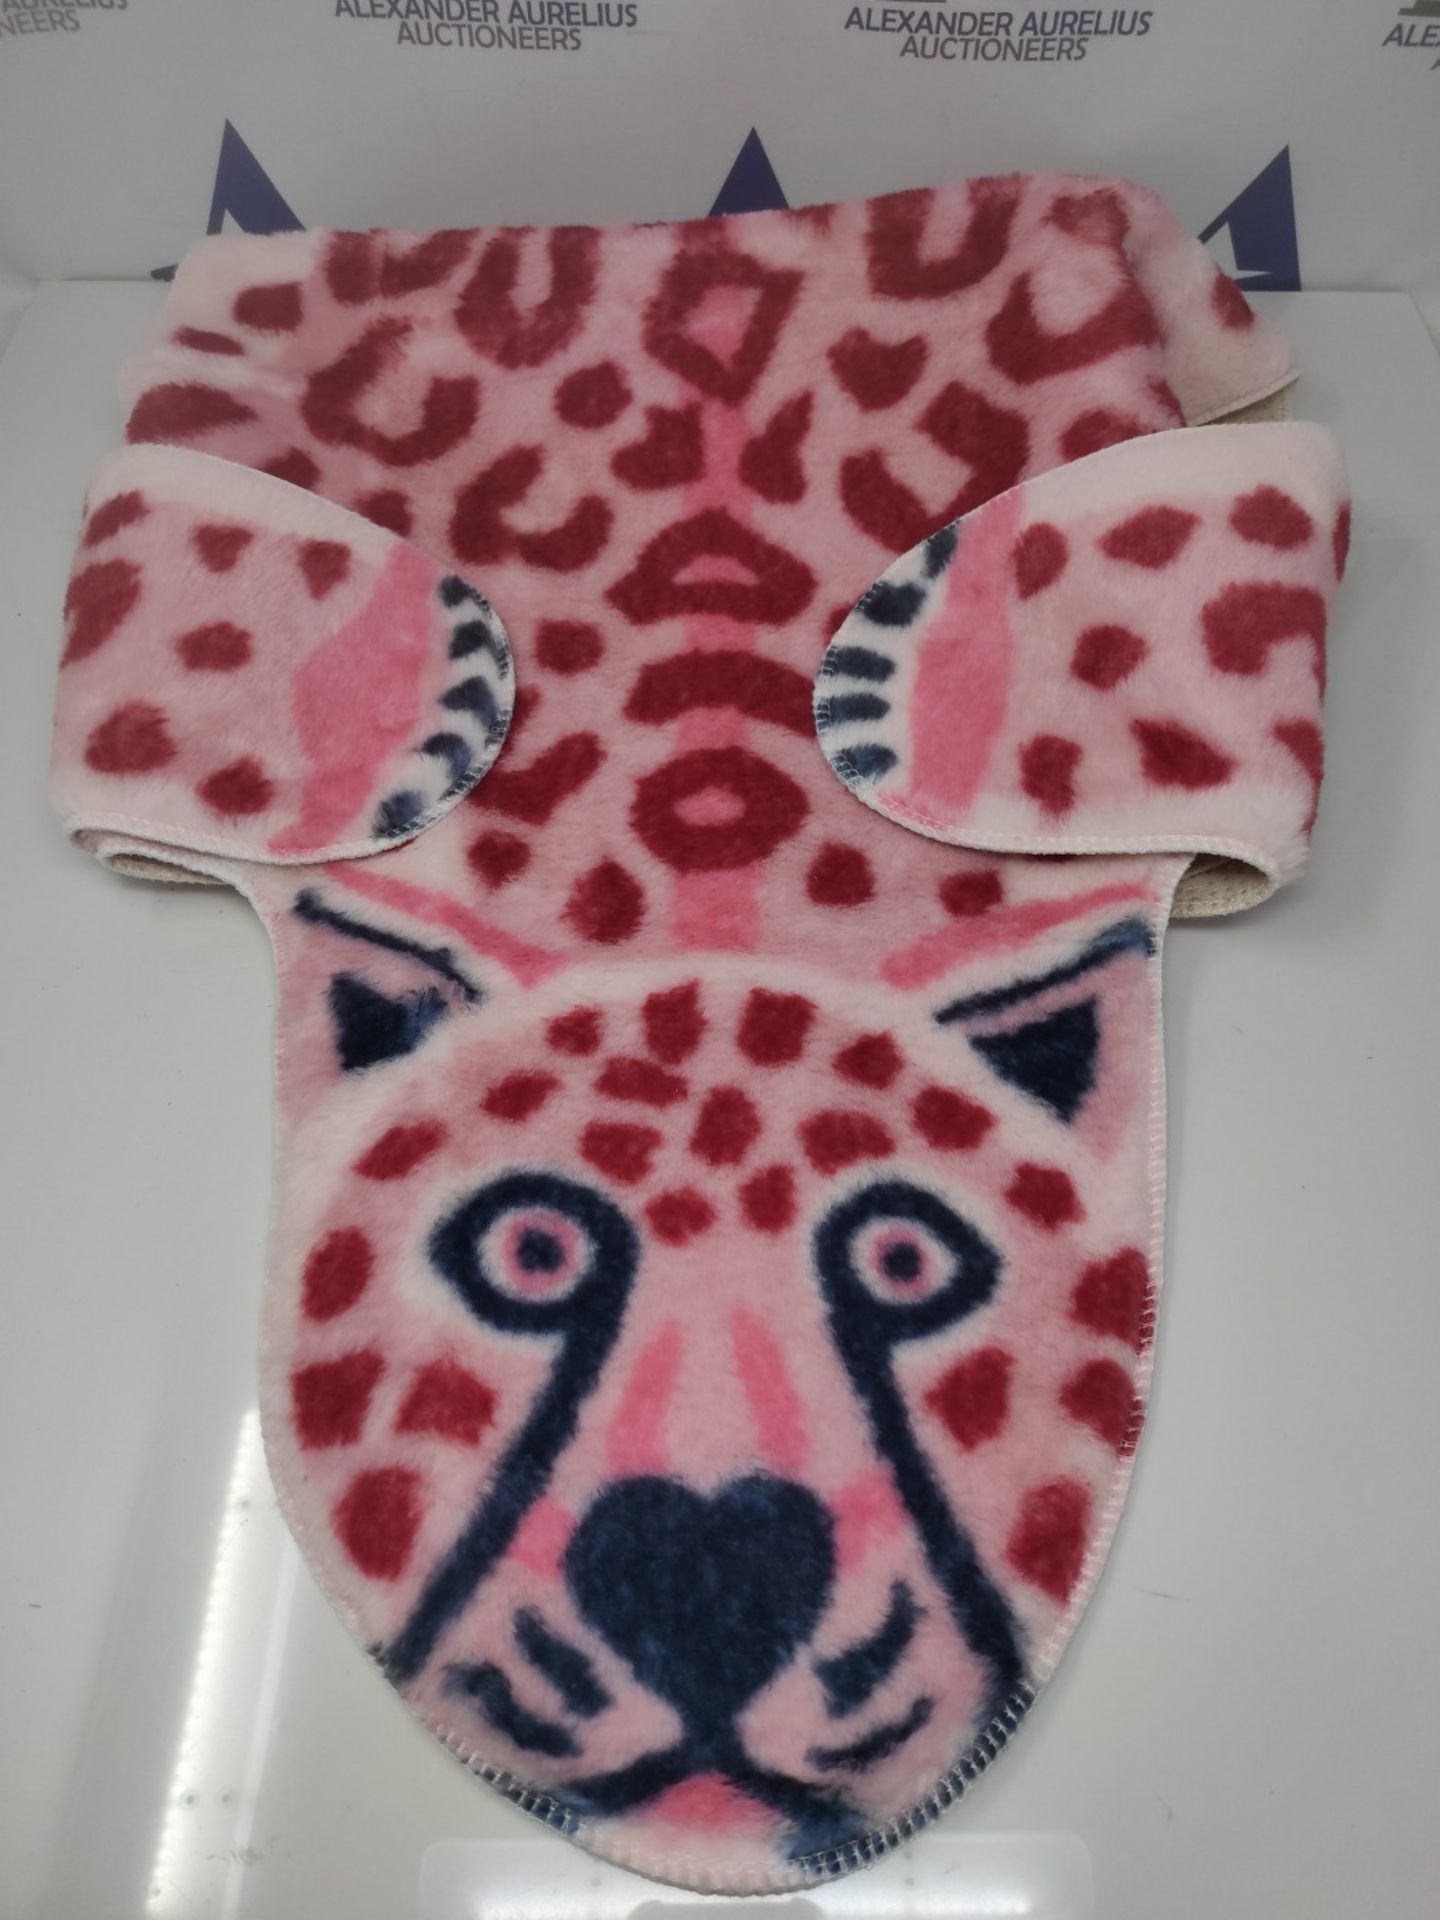 Leopard/Lions Print Rug, Faux Fu-r Cowhide Skin Rug Animal Printed Area Rug Carpet, Su